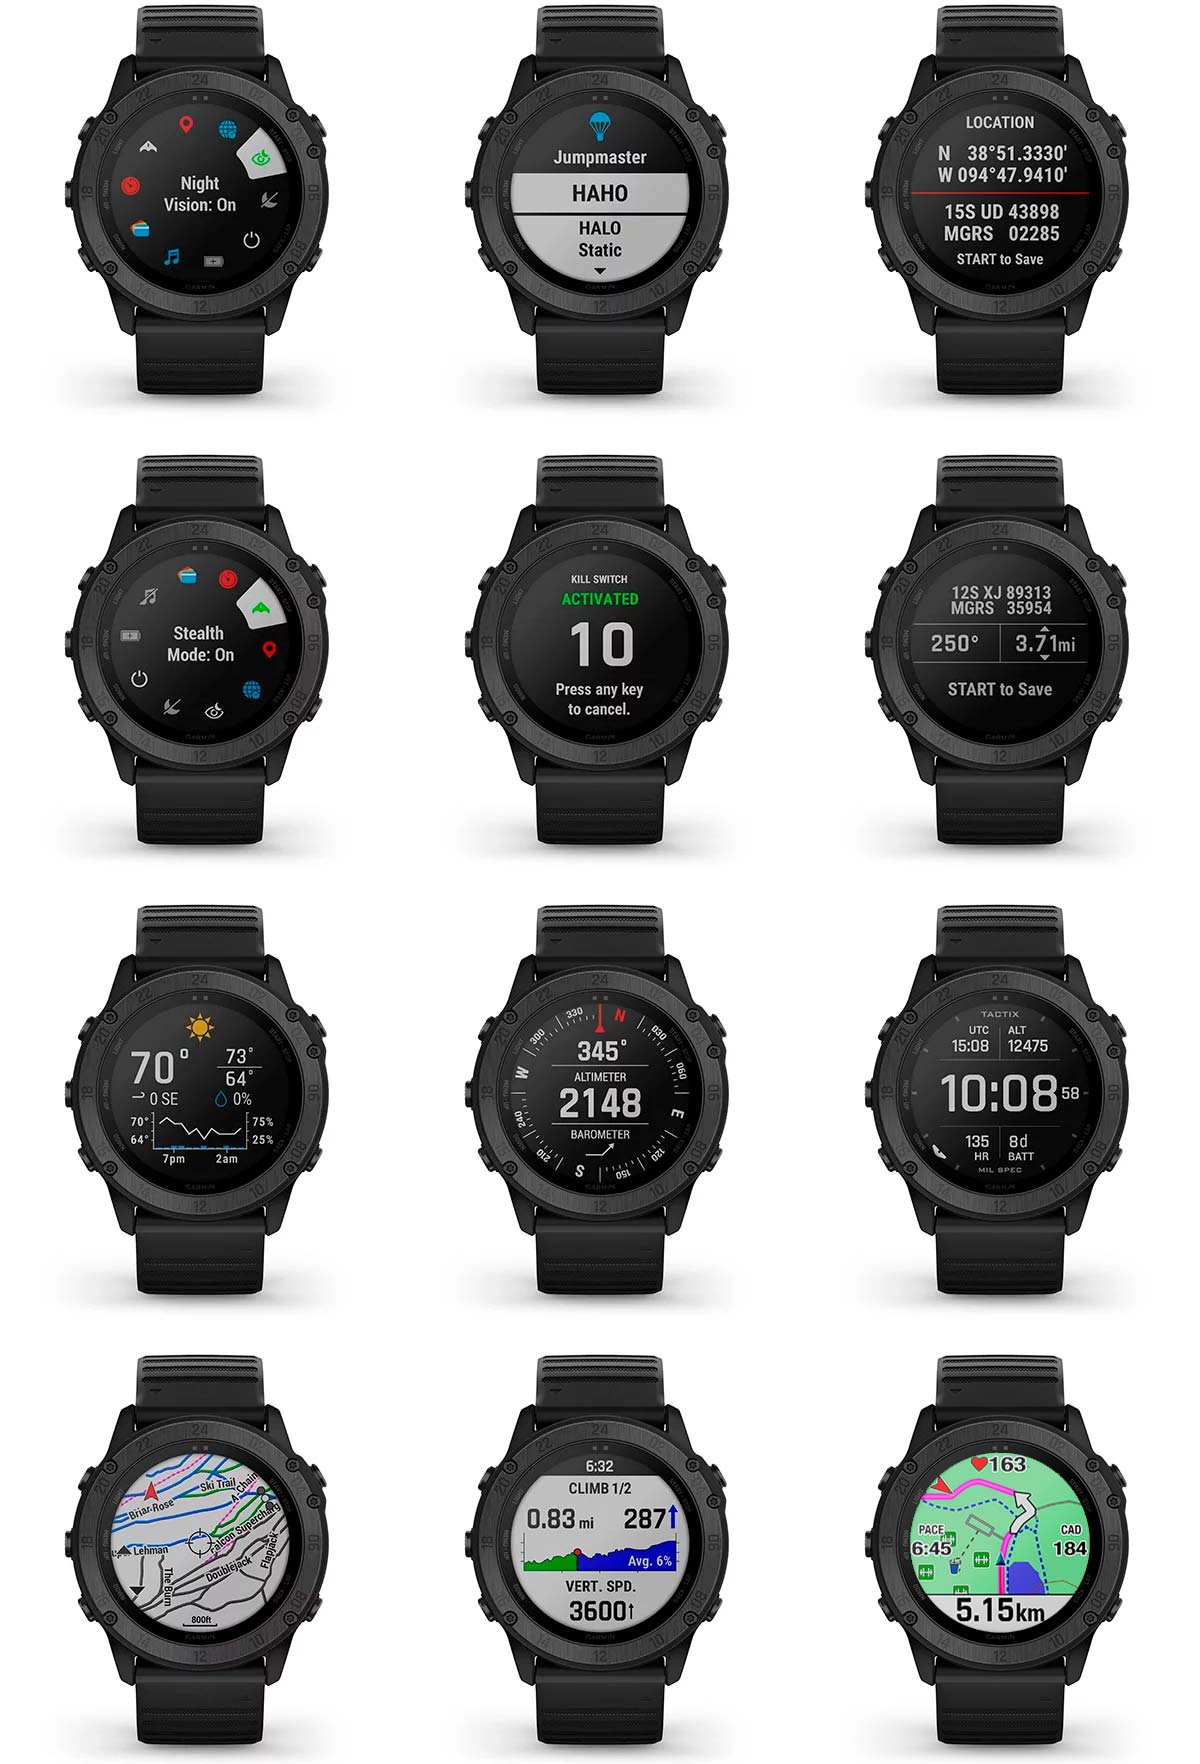 En TodoMountainBike: Garmin tactix Delta, un reloj inteligente con resistencia de grado militar y máxima privacidad del usuario